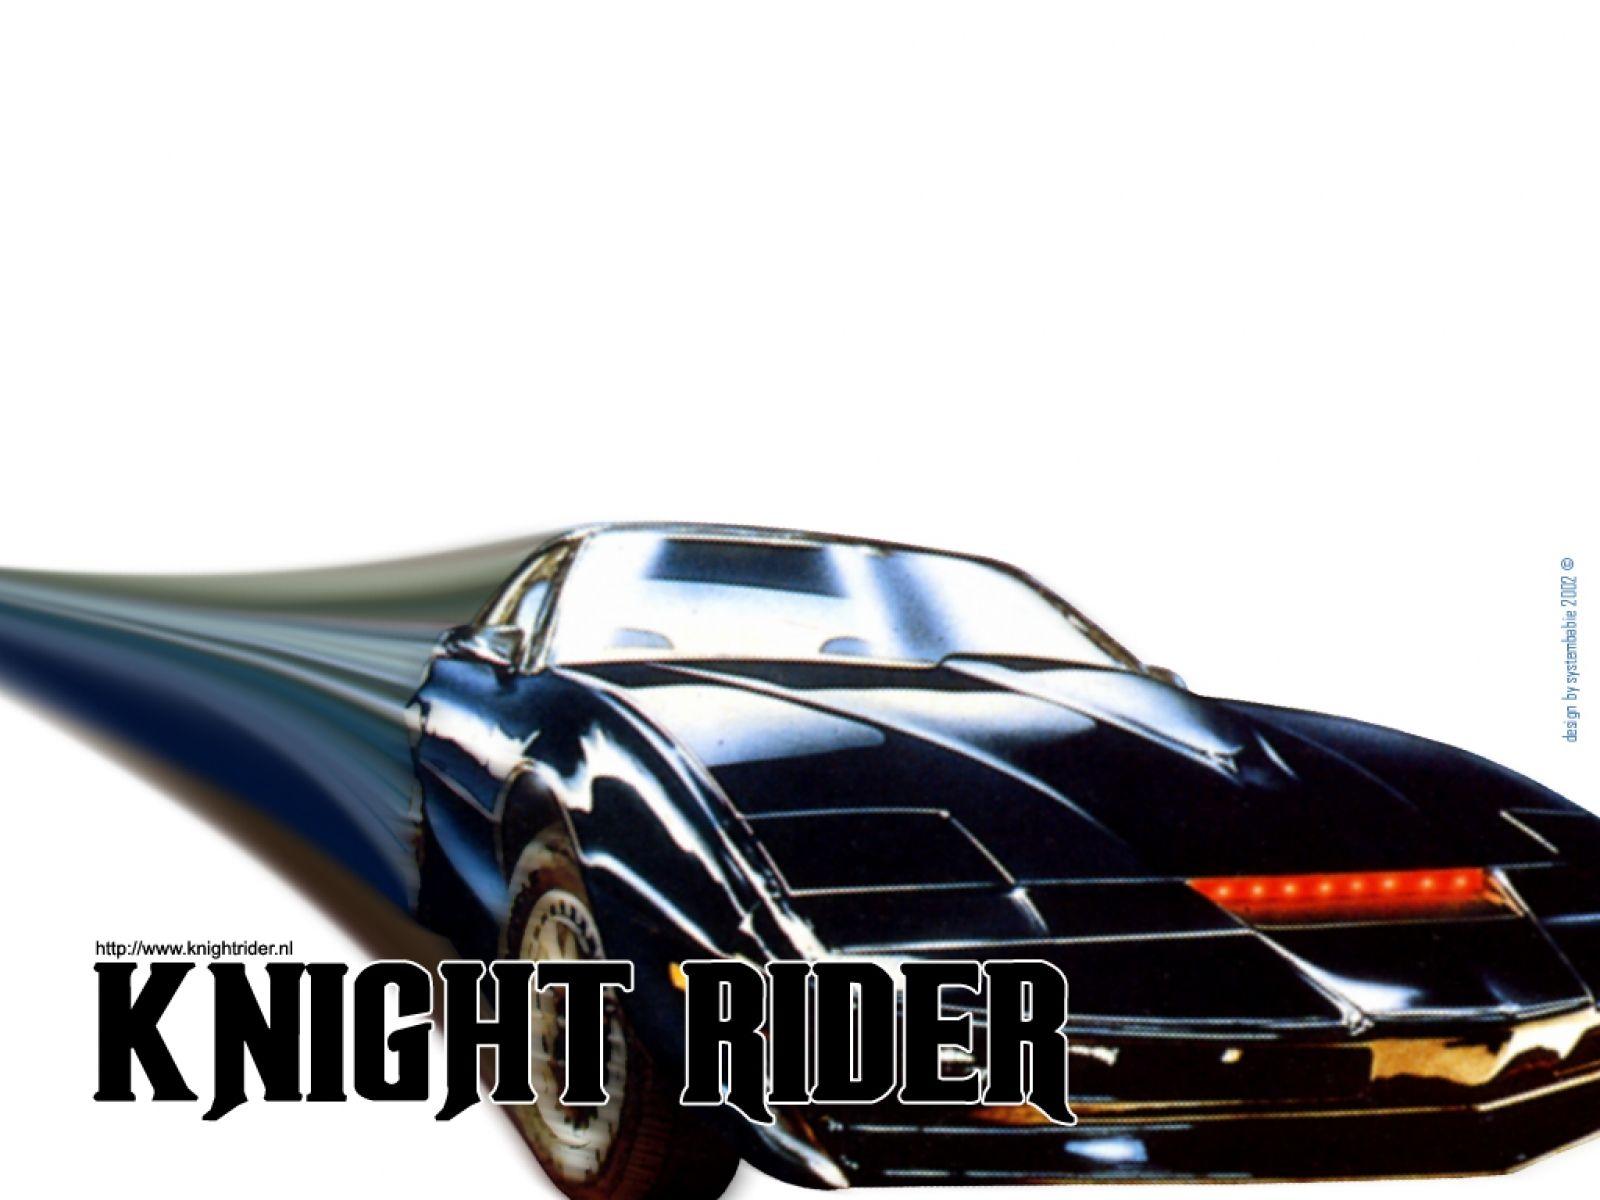 Knight Rider Wallpaper, Best Knight Rider Wallpaper, Wide Full HD